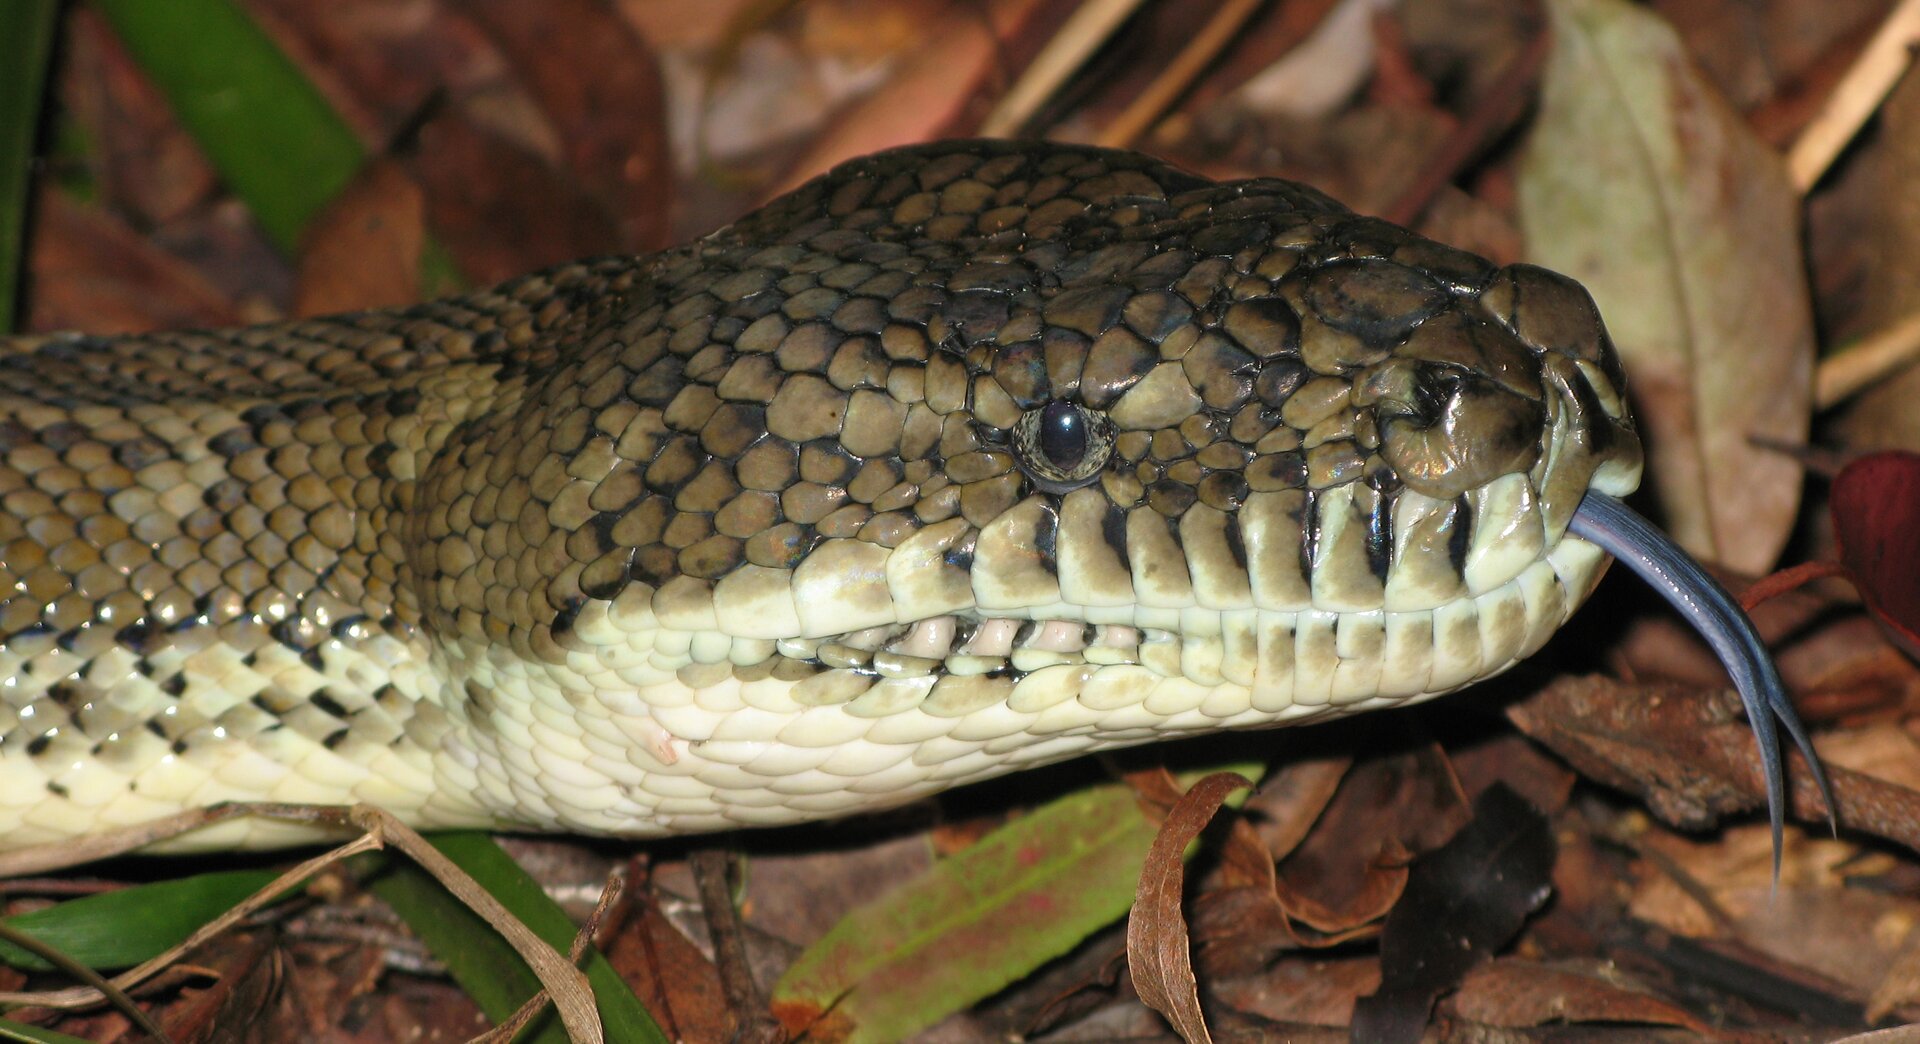 Fotografia przedstawia węża. Z jego pyska wystaje długi język, którego końcówka jest rozdwojona. U węży to właśnie język jest najważniejszym narządem węchu.